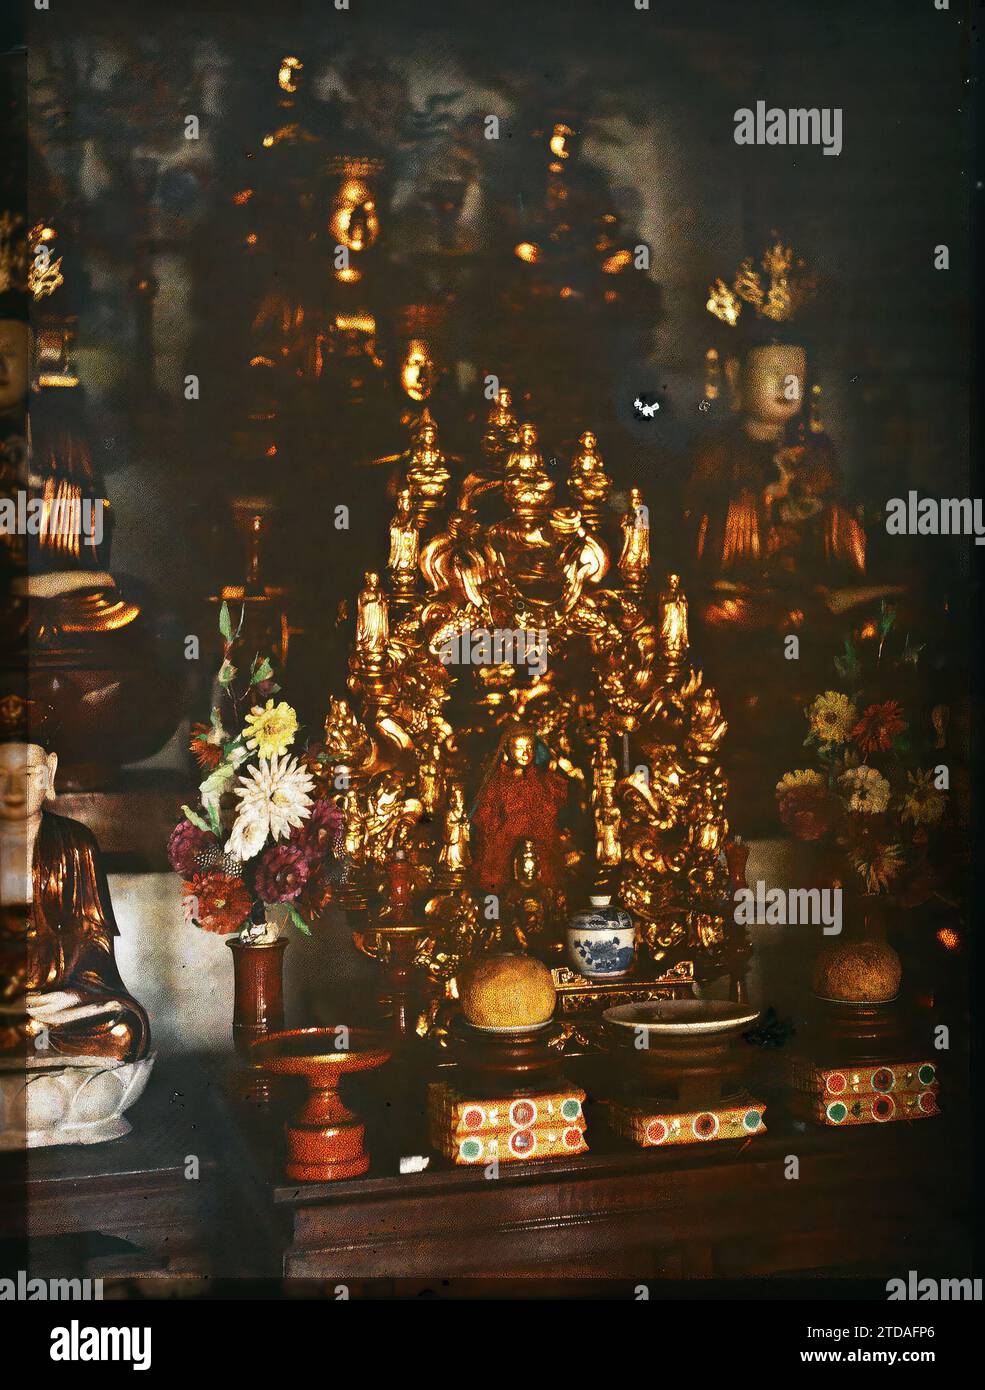 Hà-noi, Tonchino, Indocina l'altare del Buddha di Cakyamuni (Siddhartha Gautama) all'interno di un tempio buddista ('Lien-thuy'), religione, Habitat, architettura, Statua, buddismo, Buddha, Tempio, Pagoda, vista interna, offerta, altare, fiore, ceramica, Indocina, Tonkin, Hanoi, pagode buddiste, piccola Pagoda ad Hanoi, Statua di Cakya-mouni, Hà-nôi, Hainoi Vietnam, 01/04/1916 - 30/04/1916, occupato, Léon, Léon fotografo occupato en Indochine, Autochrome, foto, vetro, Autochrome, foto, positivo, verticale Foto Stock